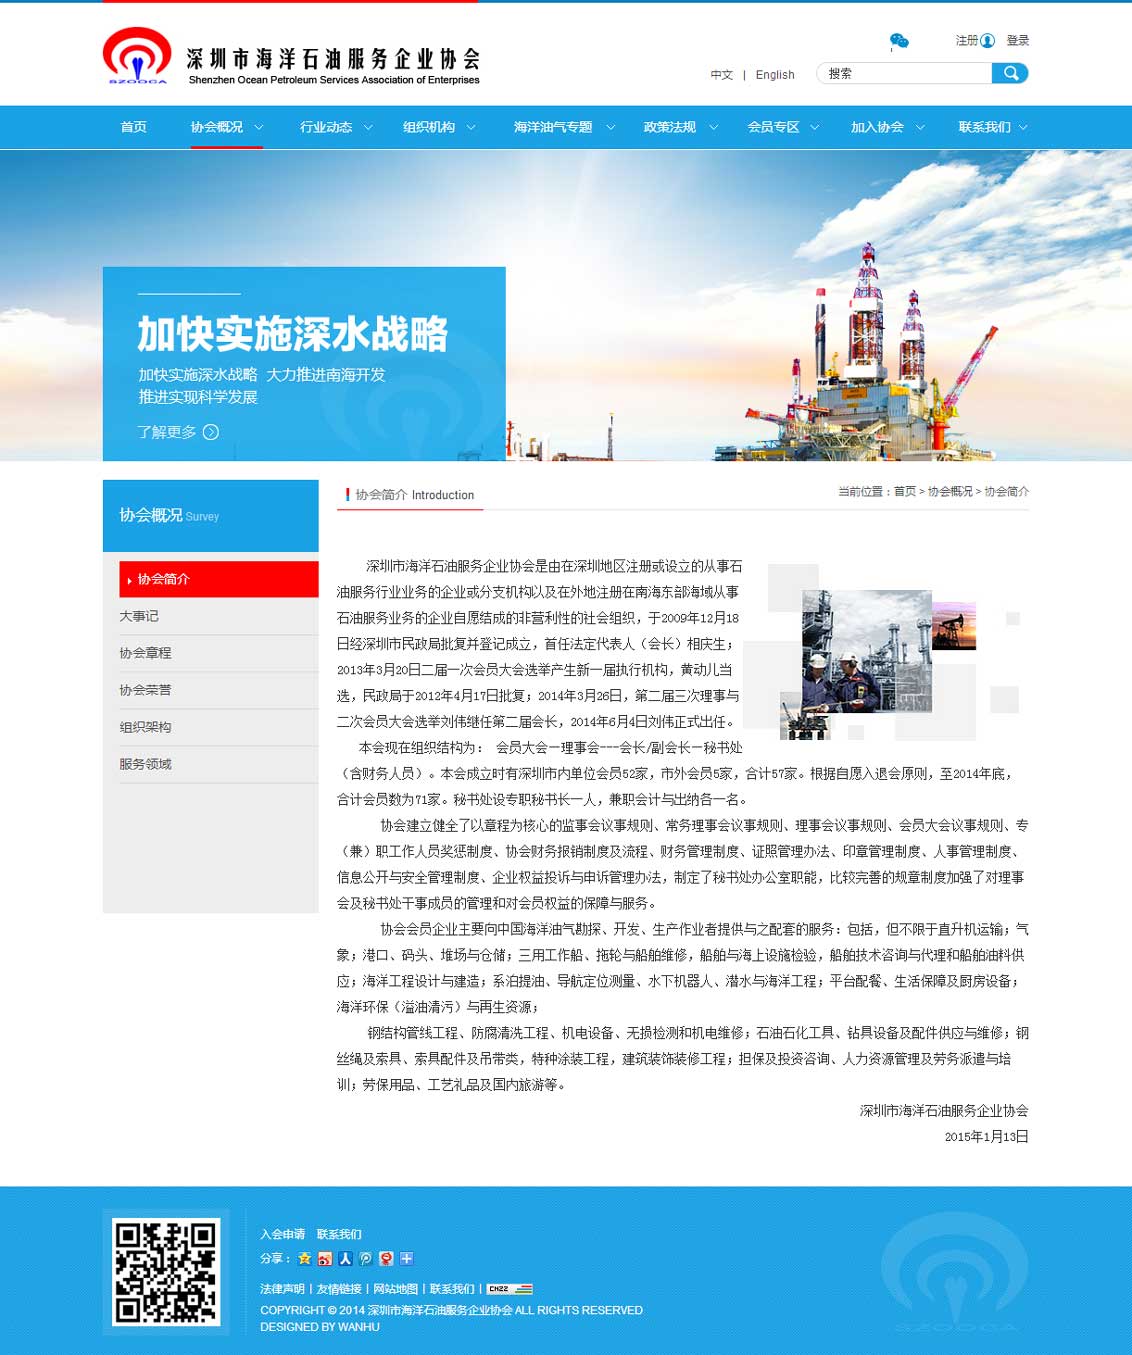 深圳市海洋石油服务企业协会-万户网络网站建设合作项目